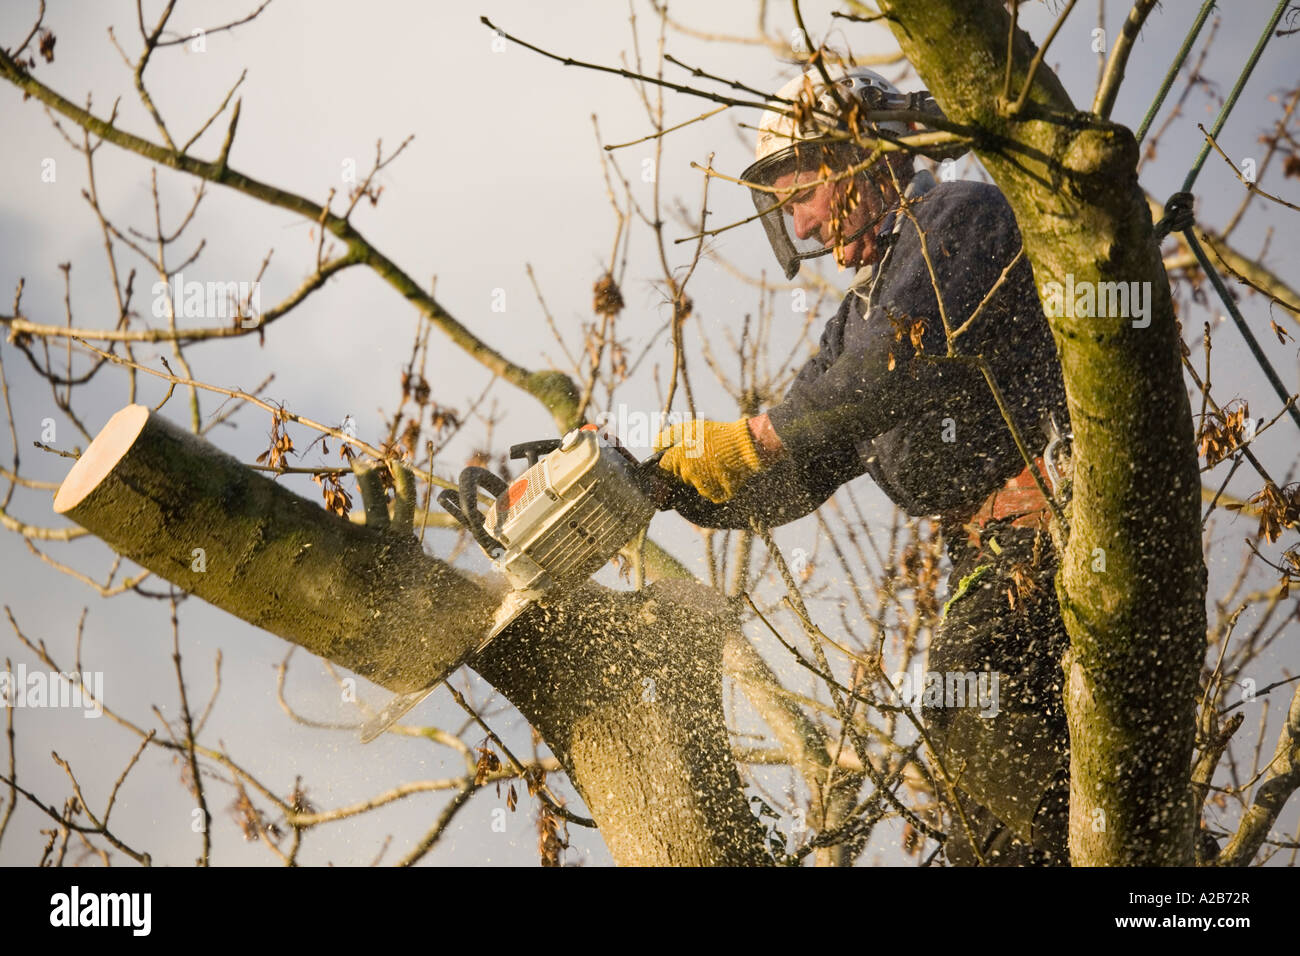 UK Baumpfleger tragen schützendes Zahnrad Abholzen eine Esche mit einer  Kettensäge fallenden Ast mit Sägemehl fliegen zu schneiden Stockfotografie  - Alamy